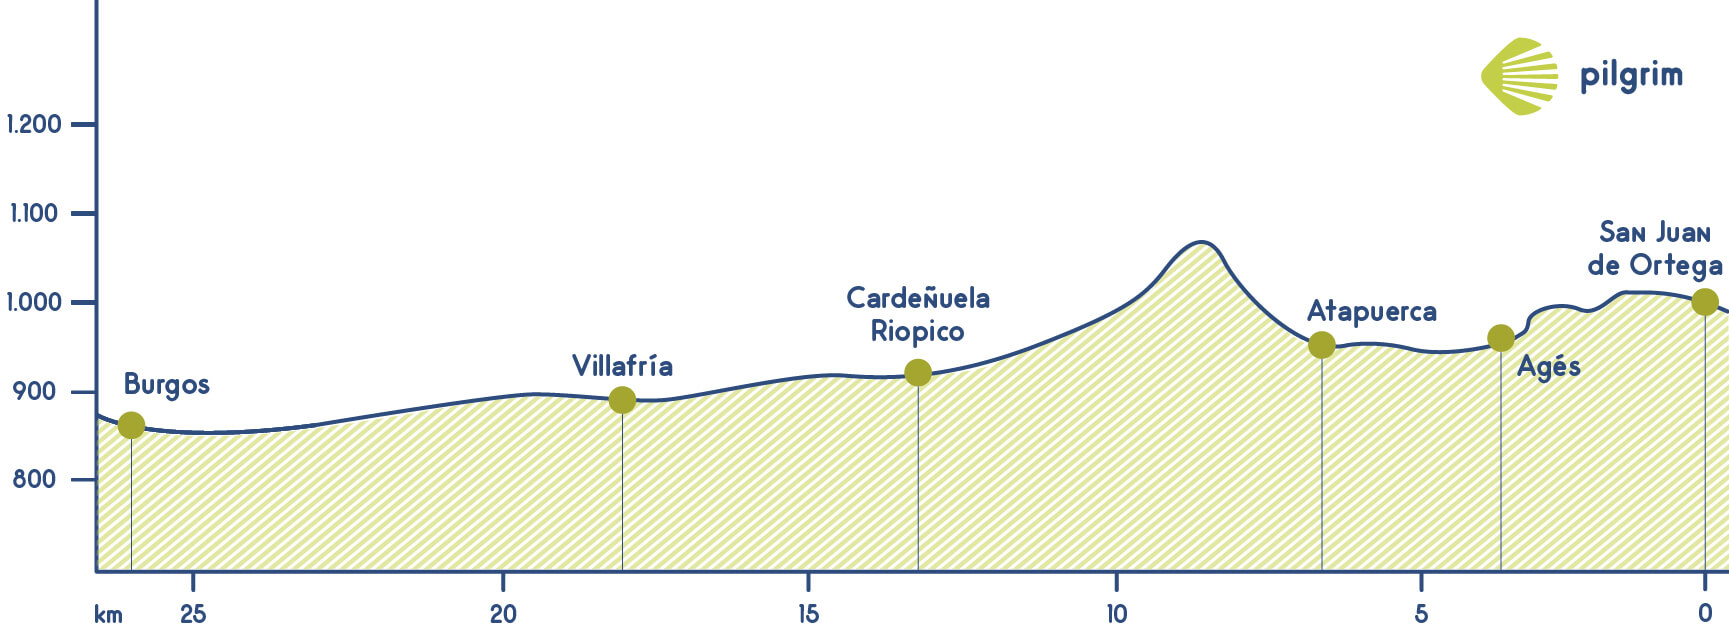 Stage 12 Camino Francés